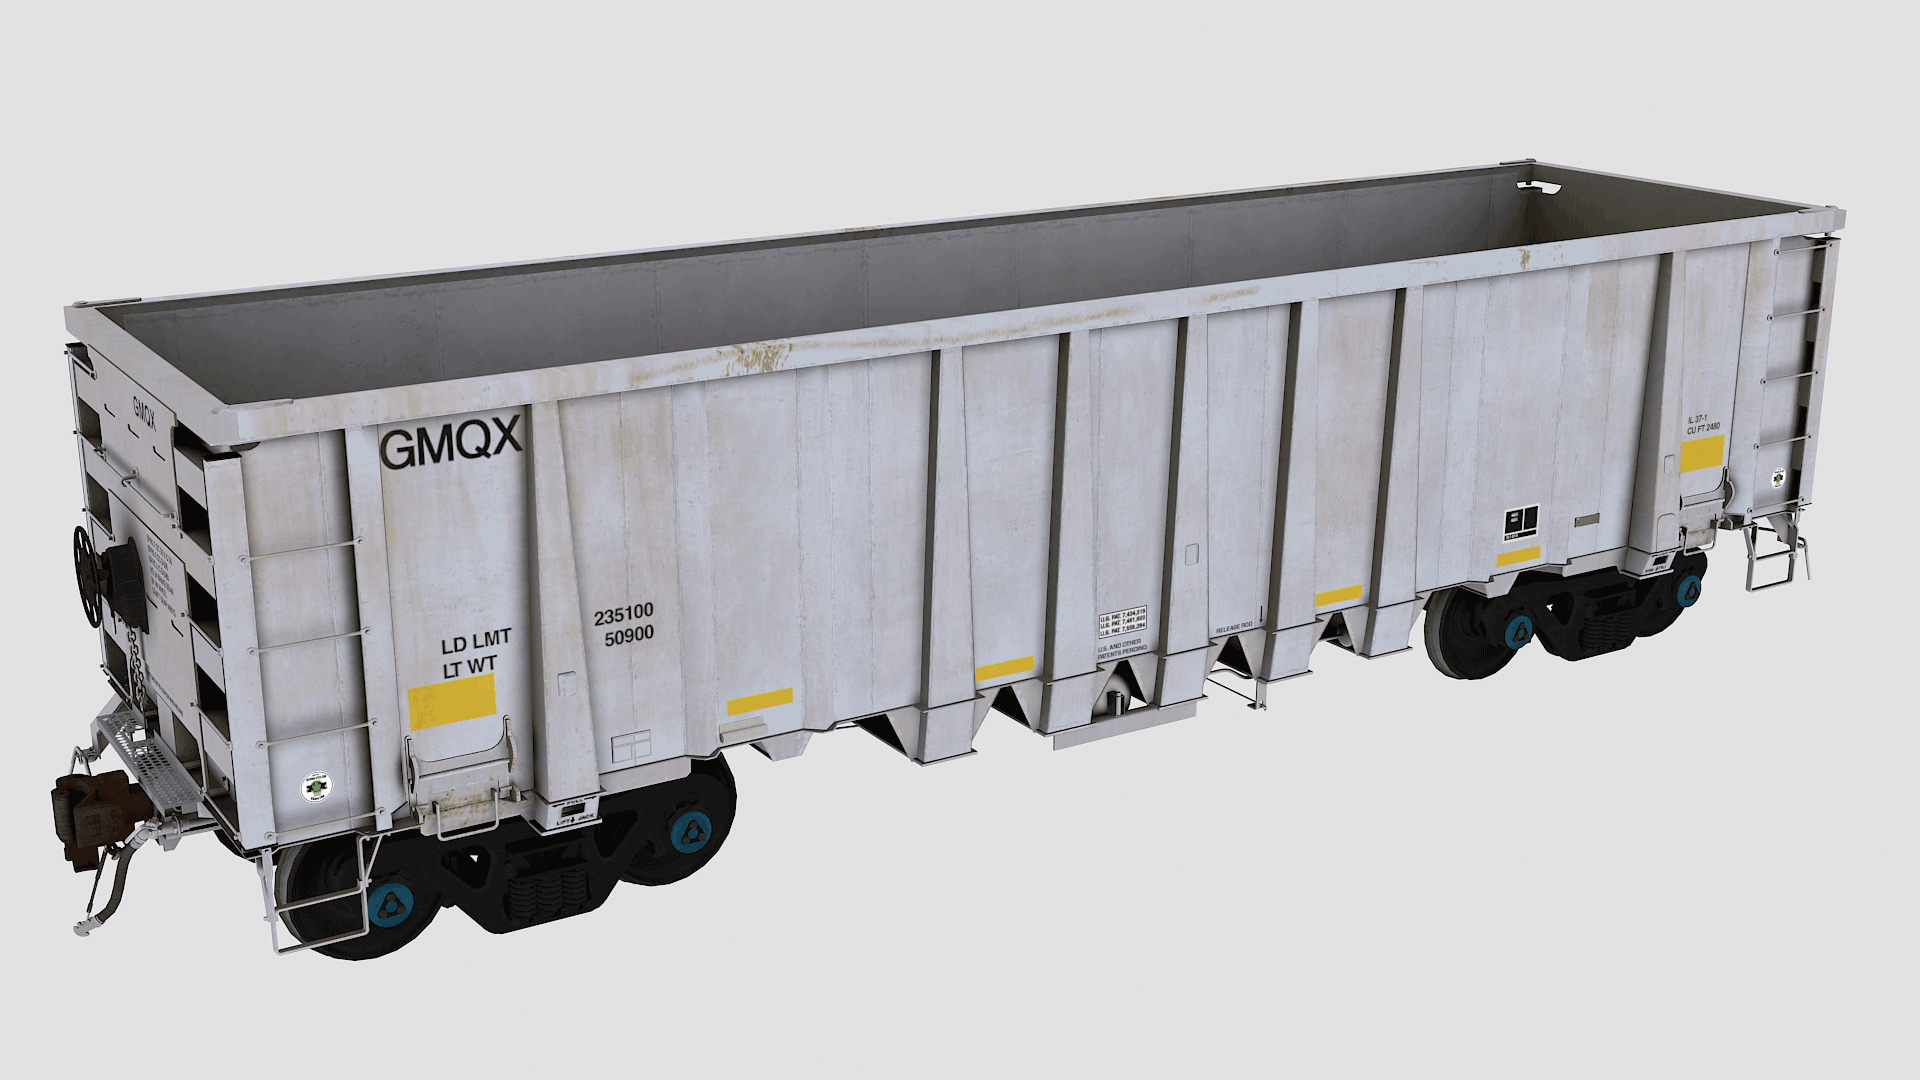 Gmqx national steel car aggregate gondola